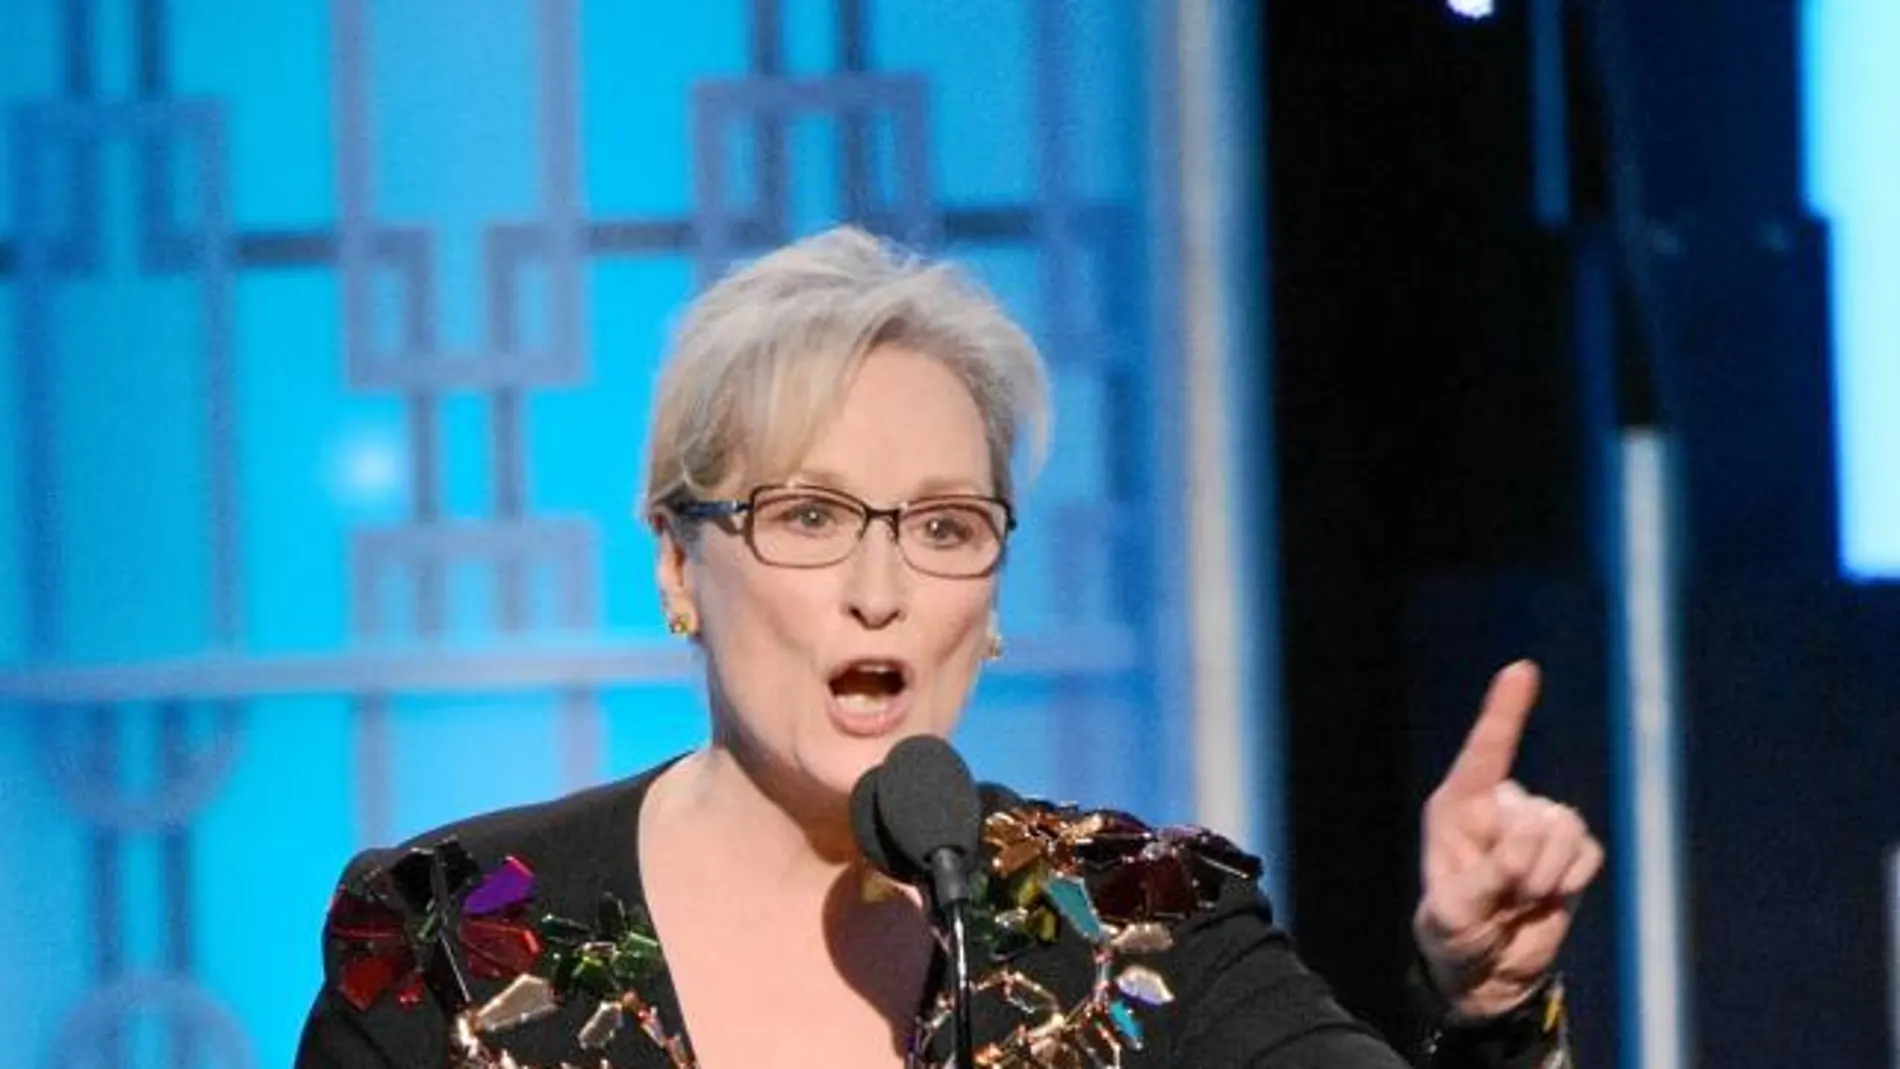 Durante la gala de los Globos de Oro, Meryl Streep fue una de las primeras actrices en atacar al presidente